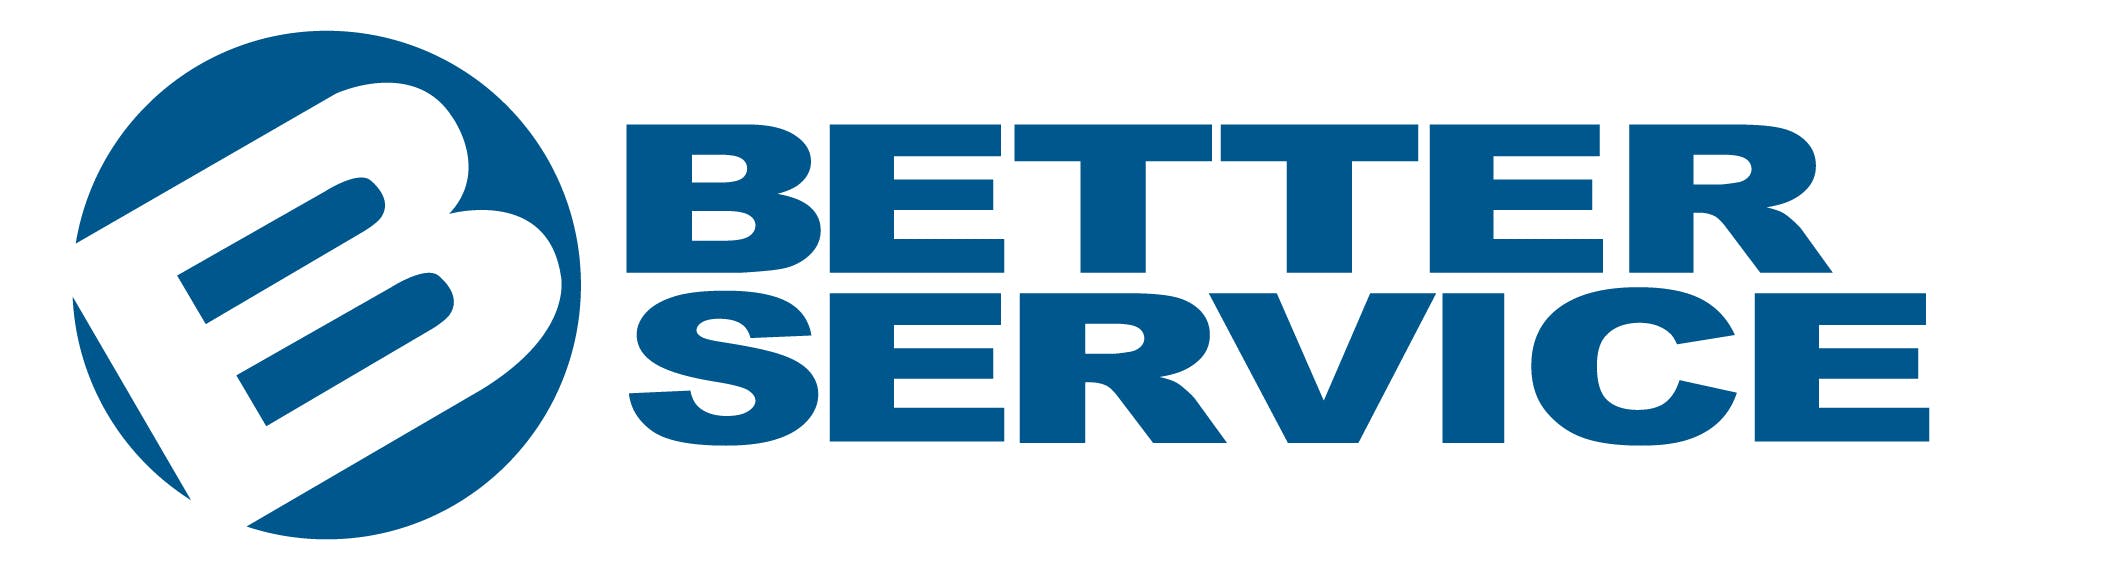 Shanghai Better Service logo